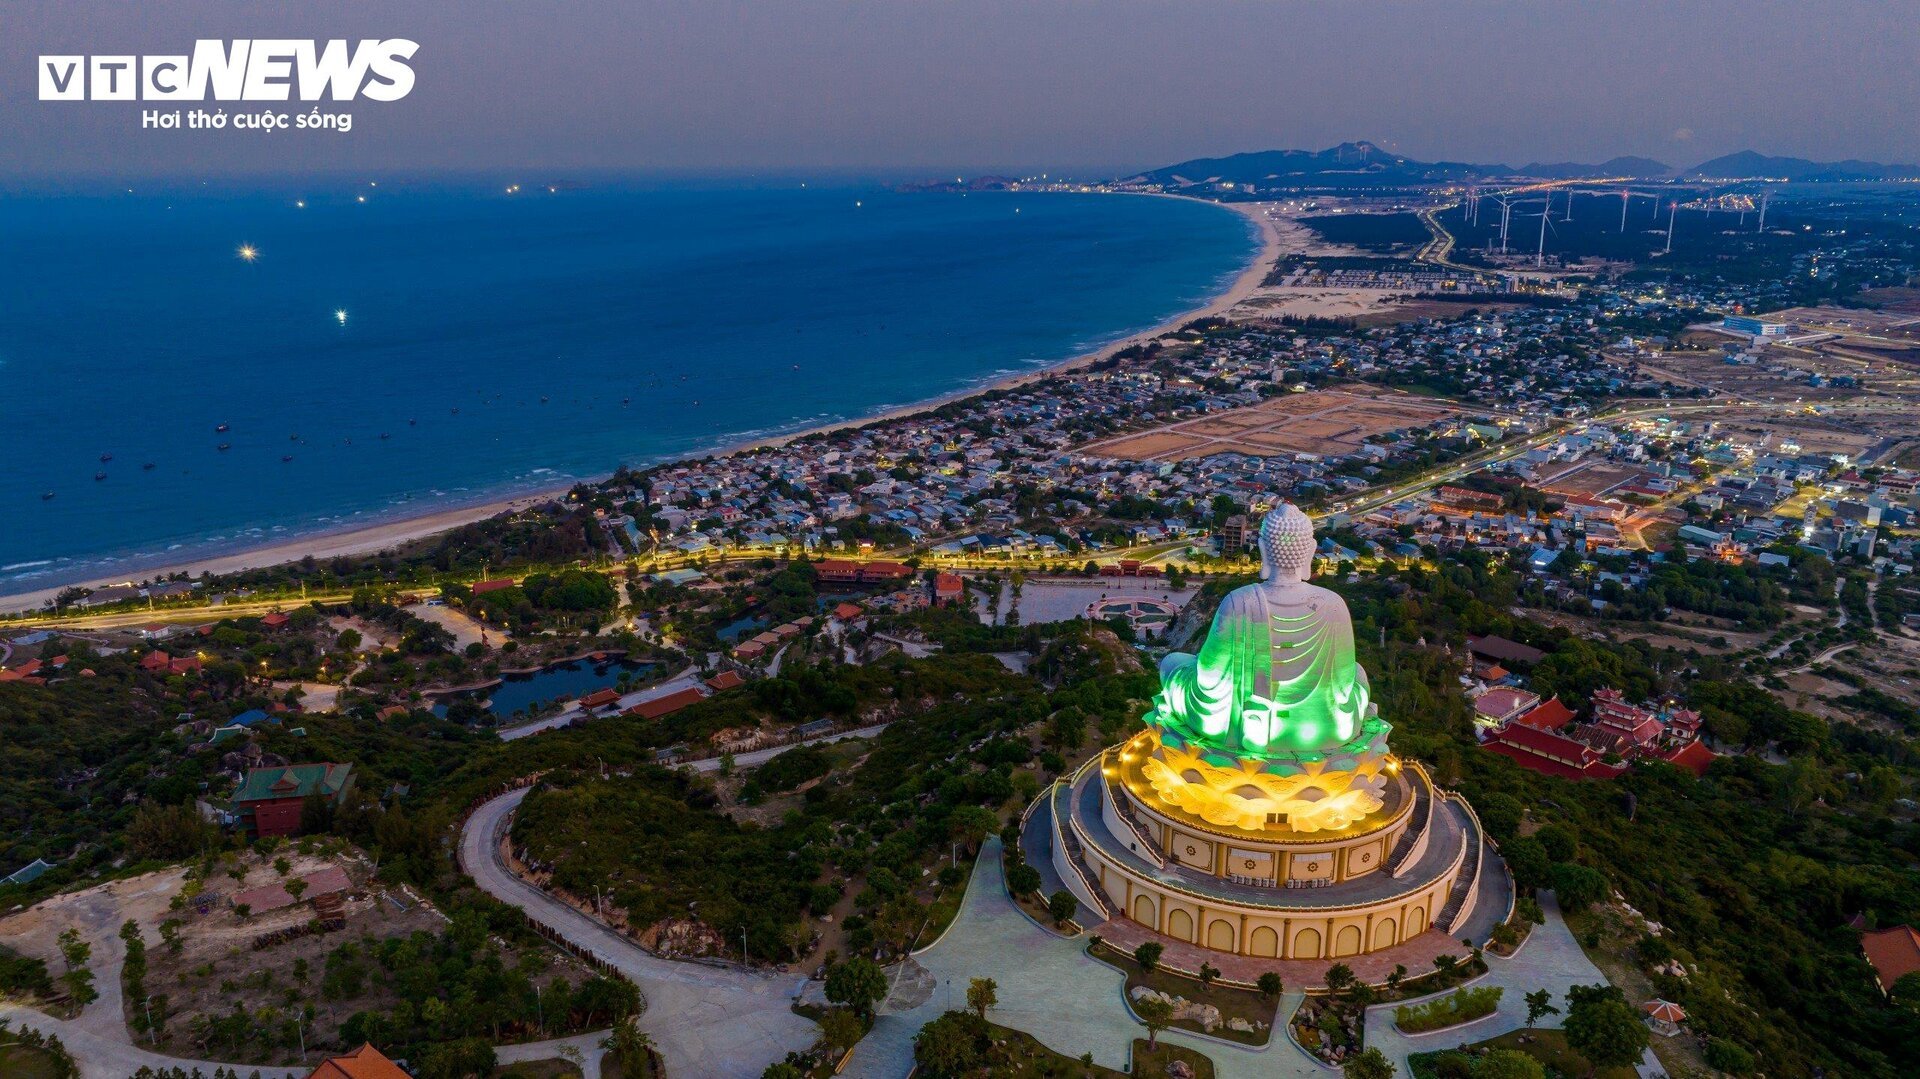 Khám phá thiên đường biển dưới chân tượng phật ngồi khổng lồ tại Bình Định - 10